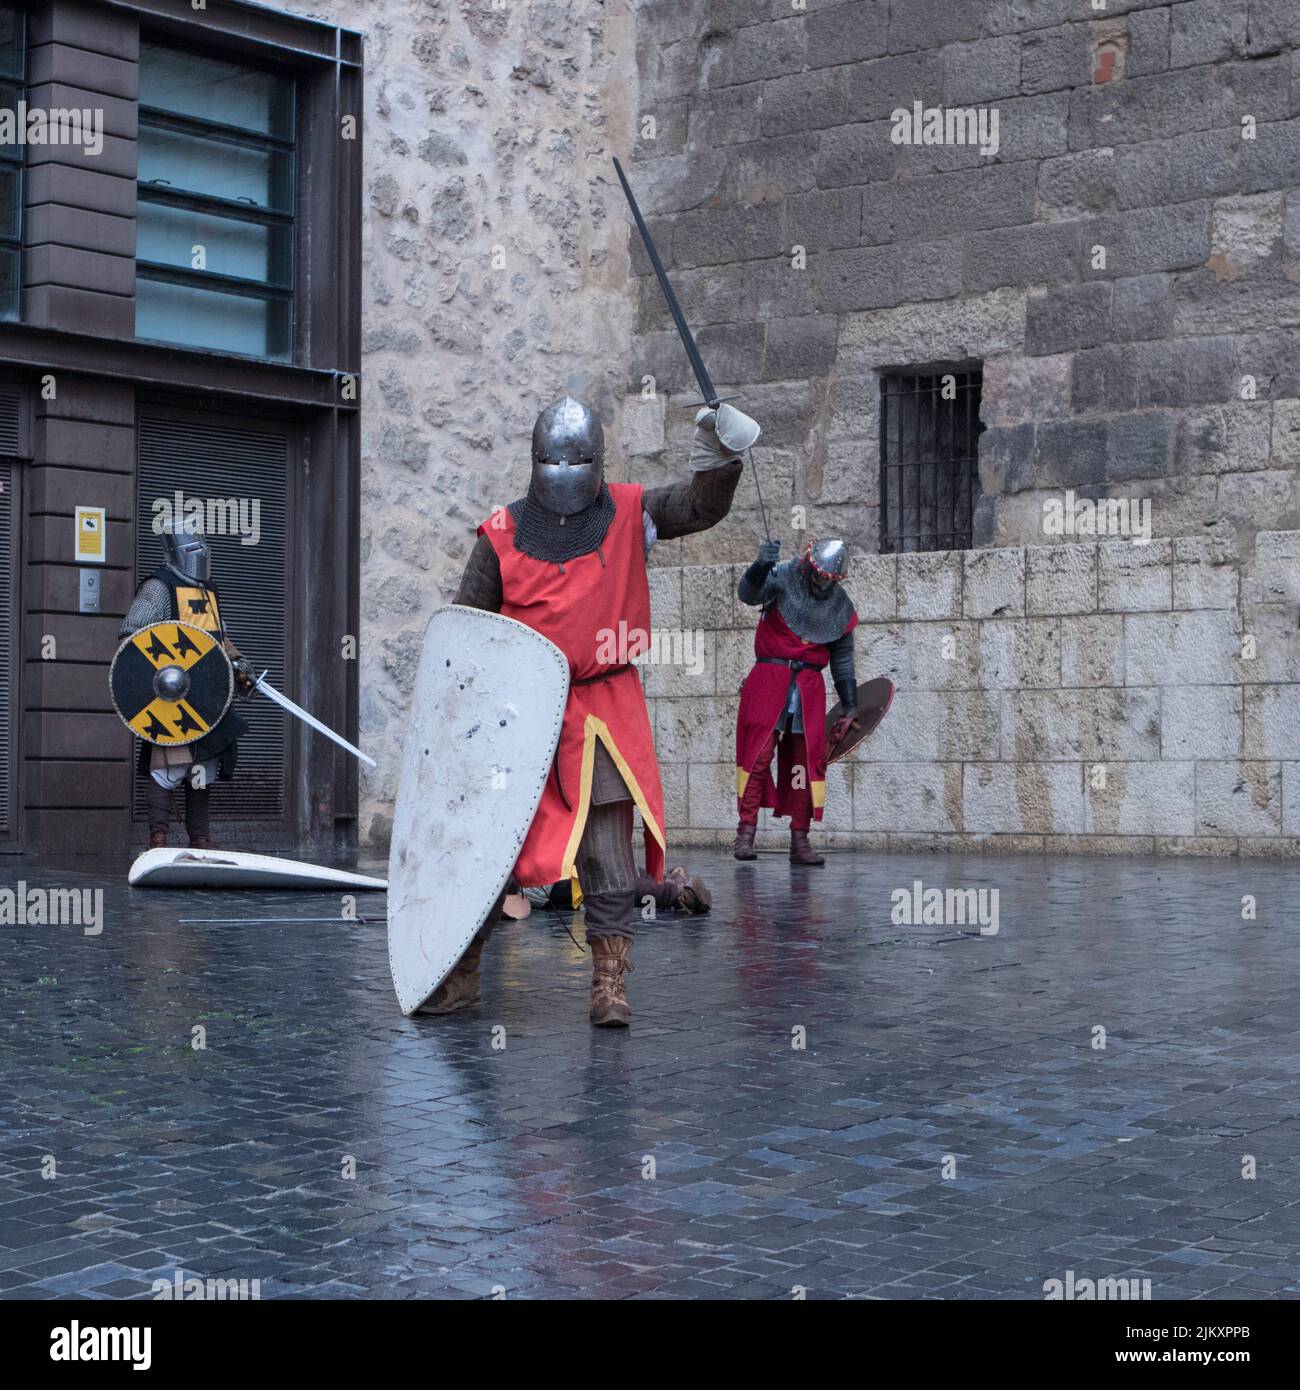 Guerreros Medievales representando una batalla medieval Stock Photo